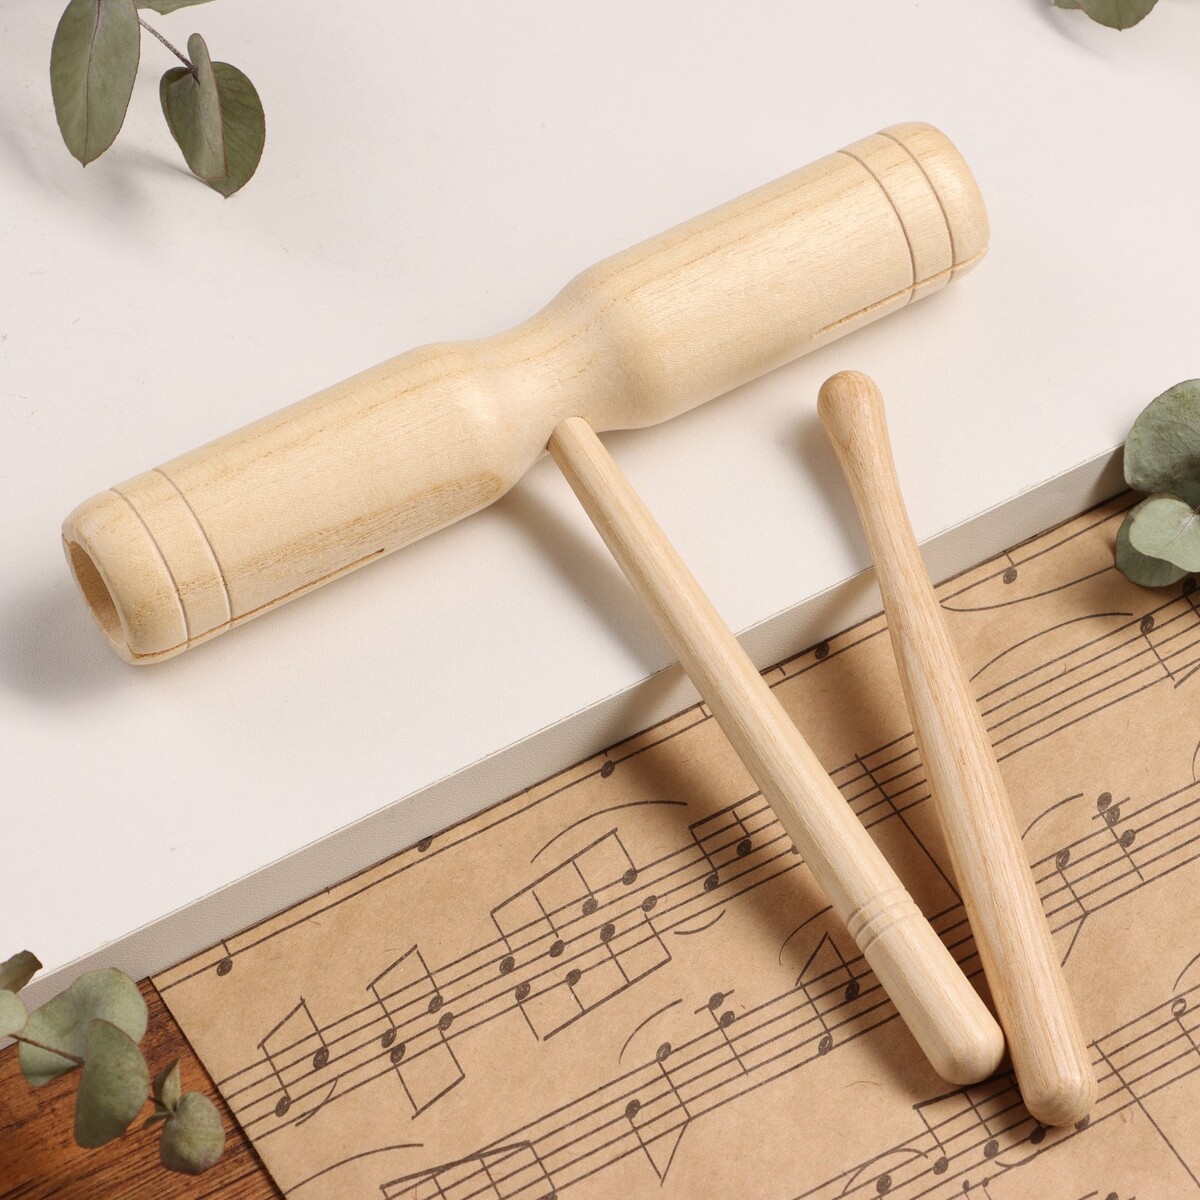 Музыкальный инструмент гуиро music life деревянный, одноручный музыкальный инструмент казу music life серебристый